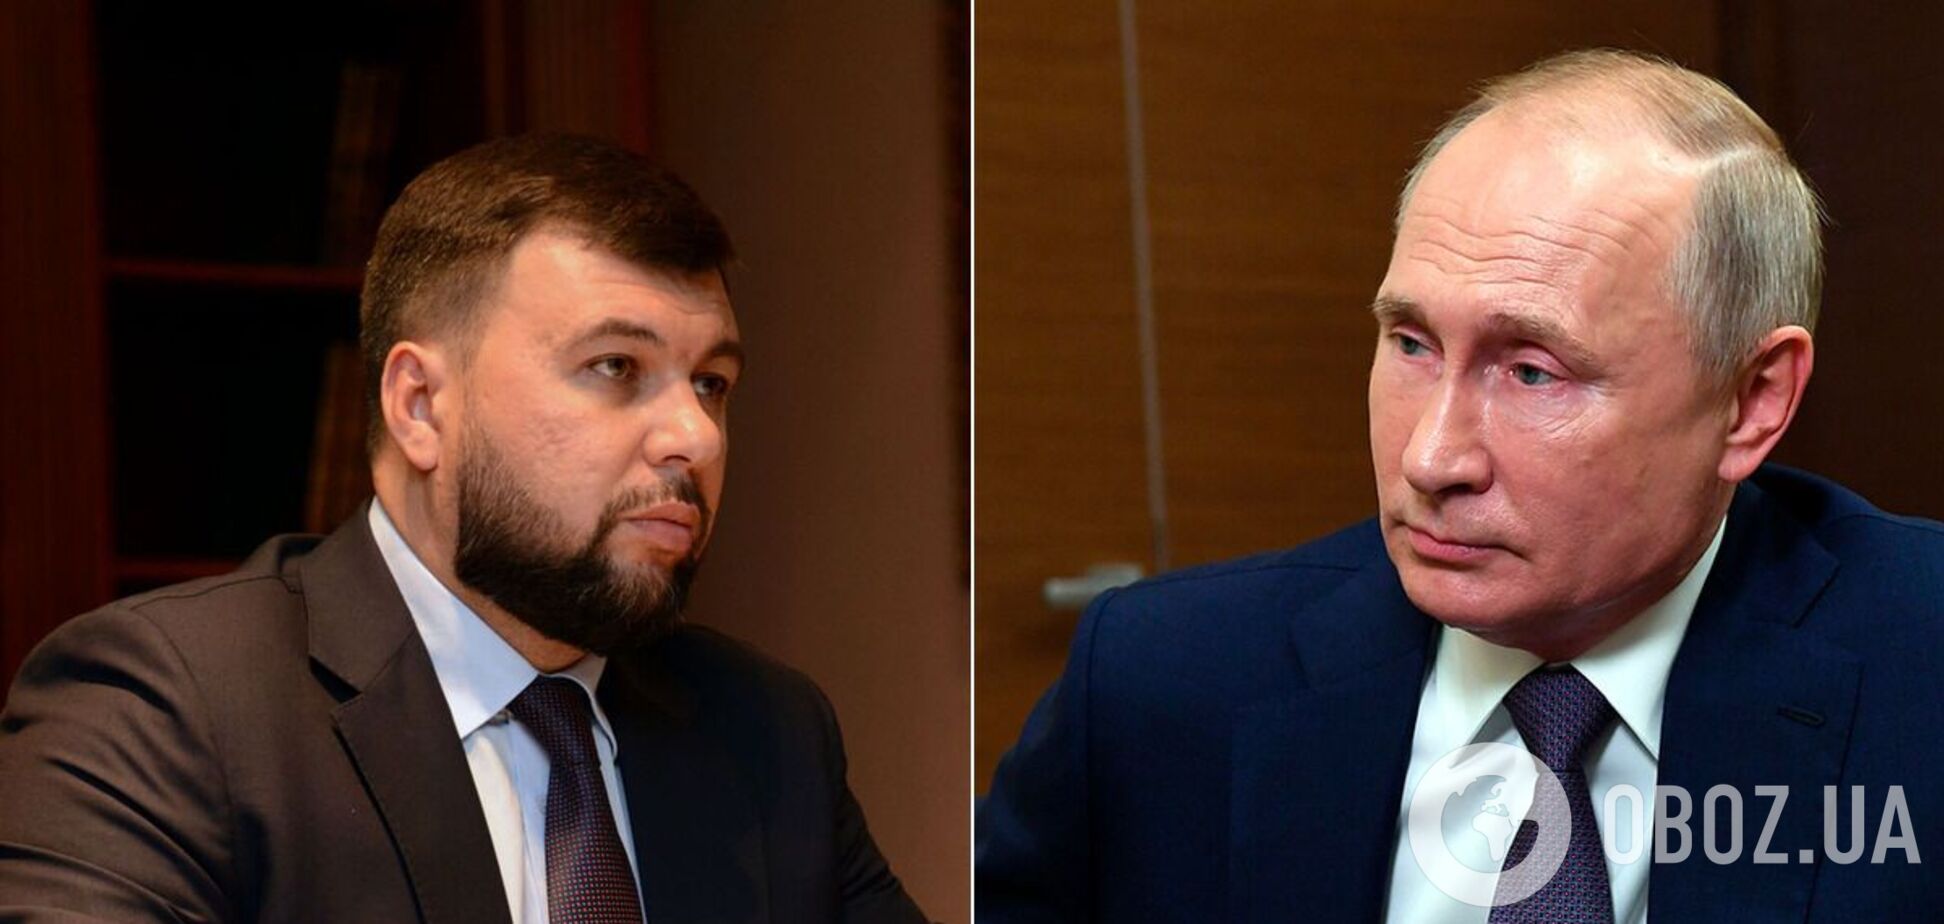 На 'прямой линии' с дурдомом: Пушилин работает над импортозамещением навоза, а Путин 'заряжает' львовскую воду